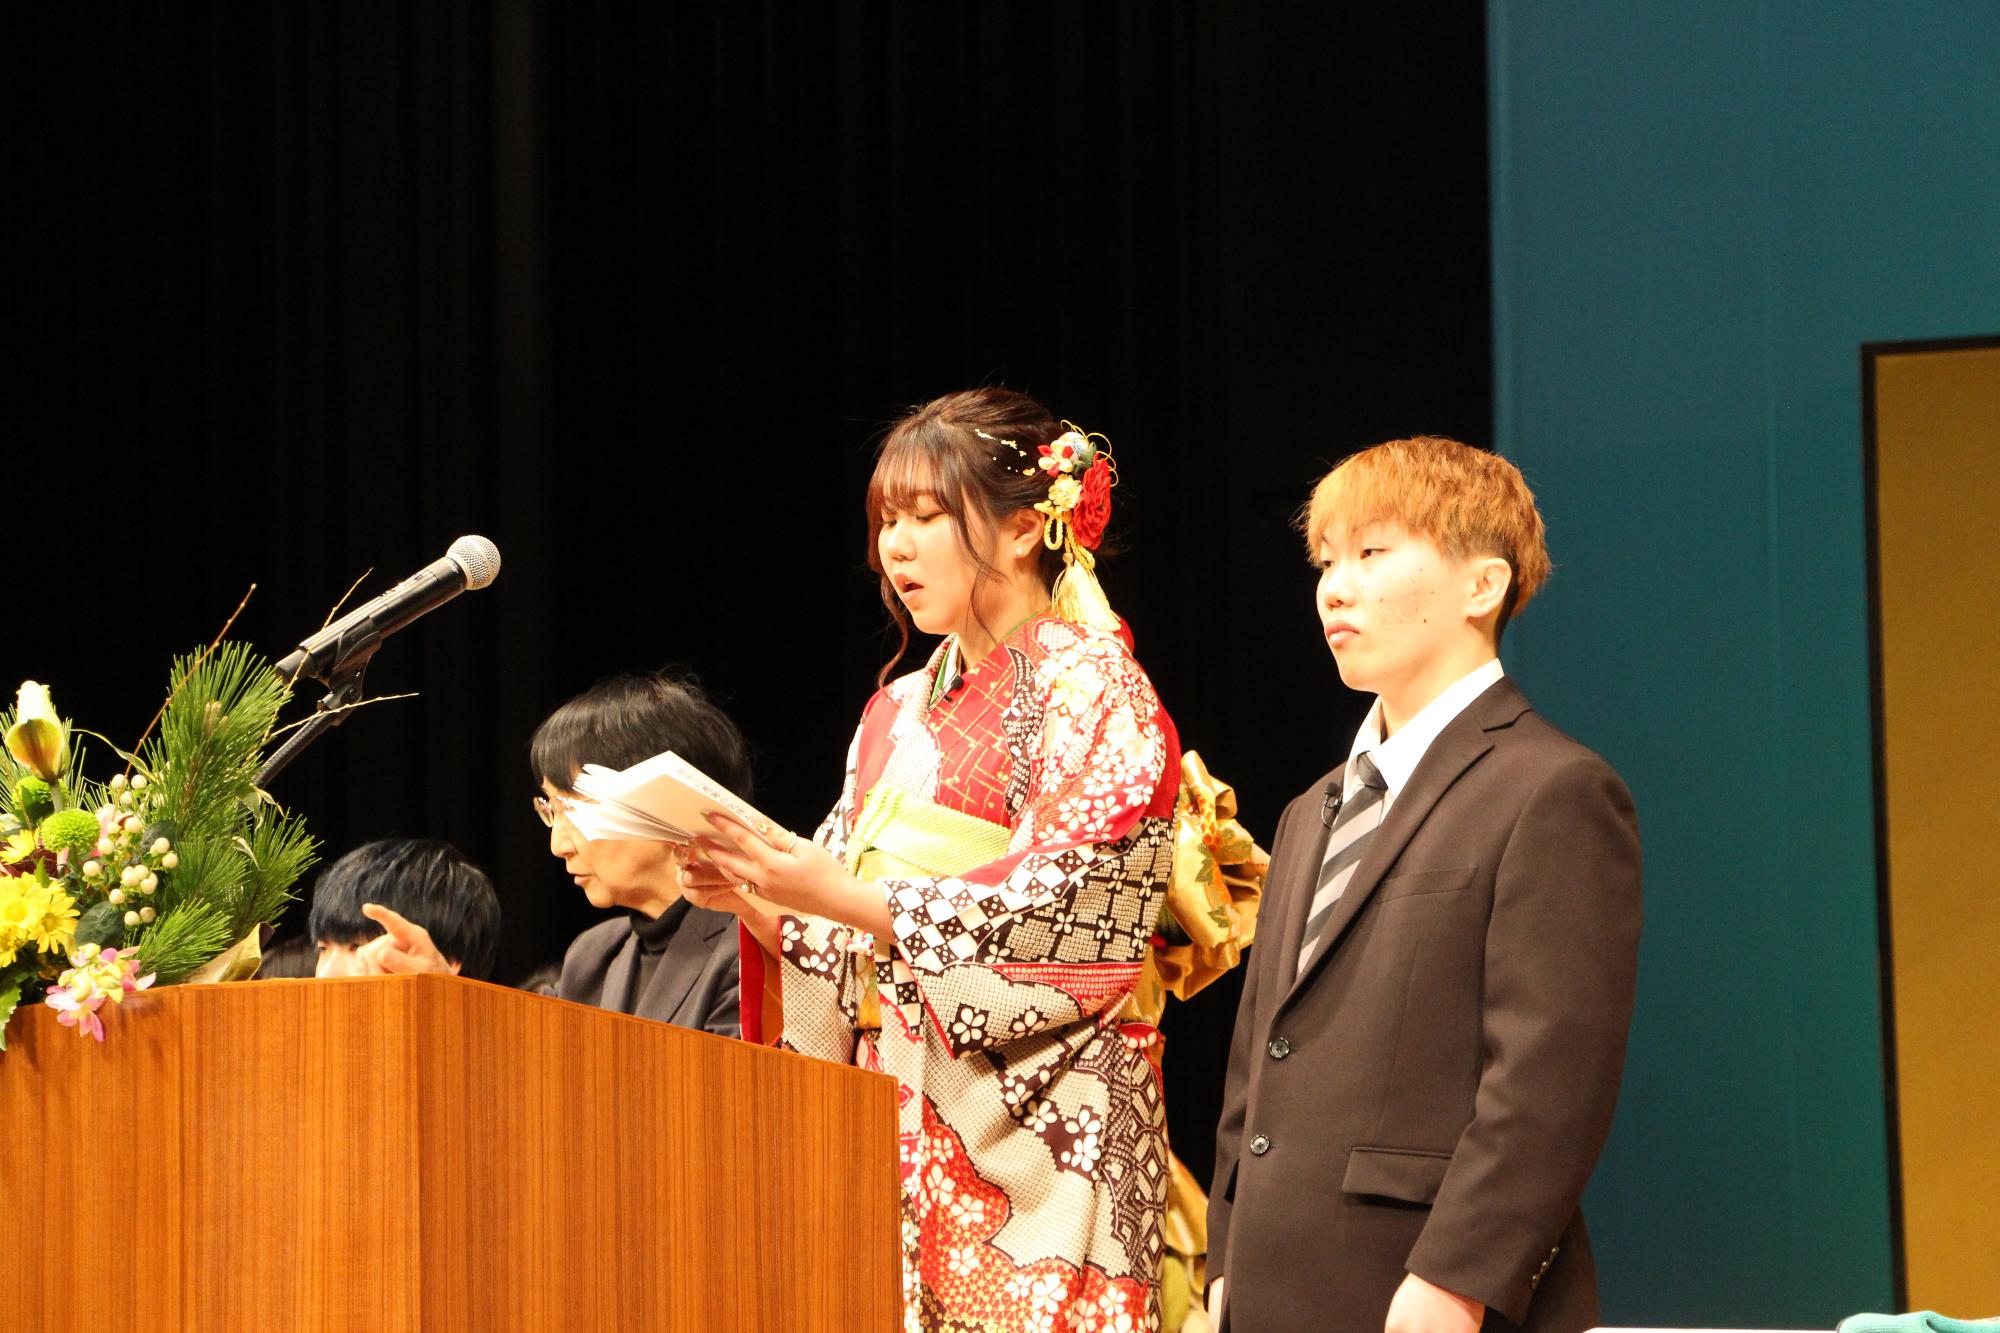 山崎文化会館のステージ上で新成人らに向かって誓いの言葉を述べる多賀成美さんと西村亘貴さんの写真